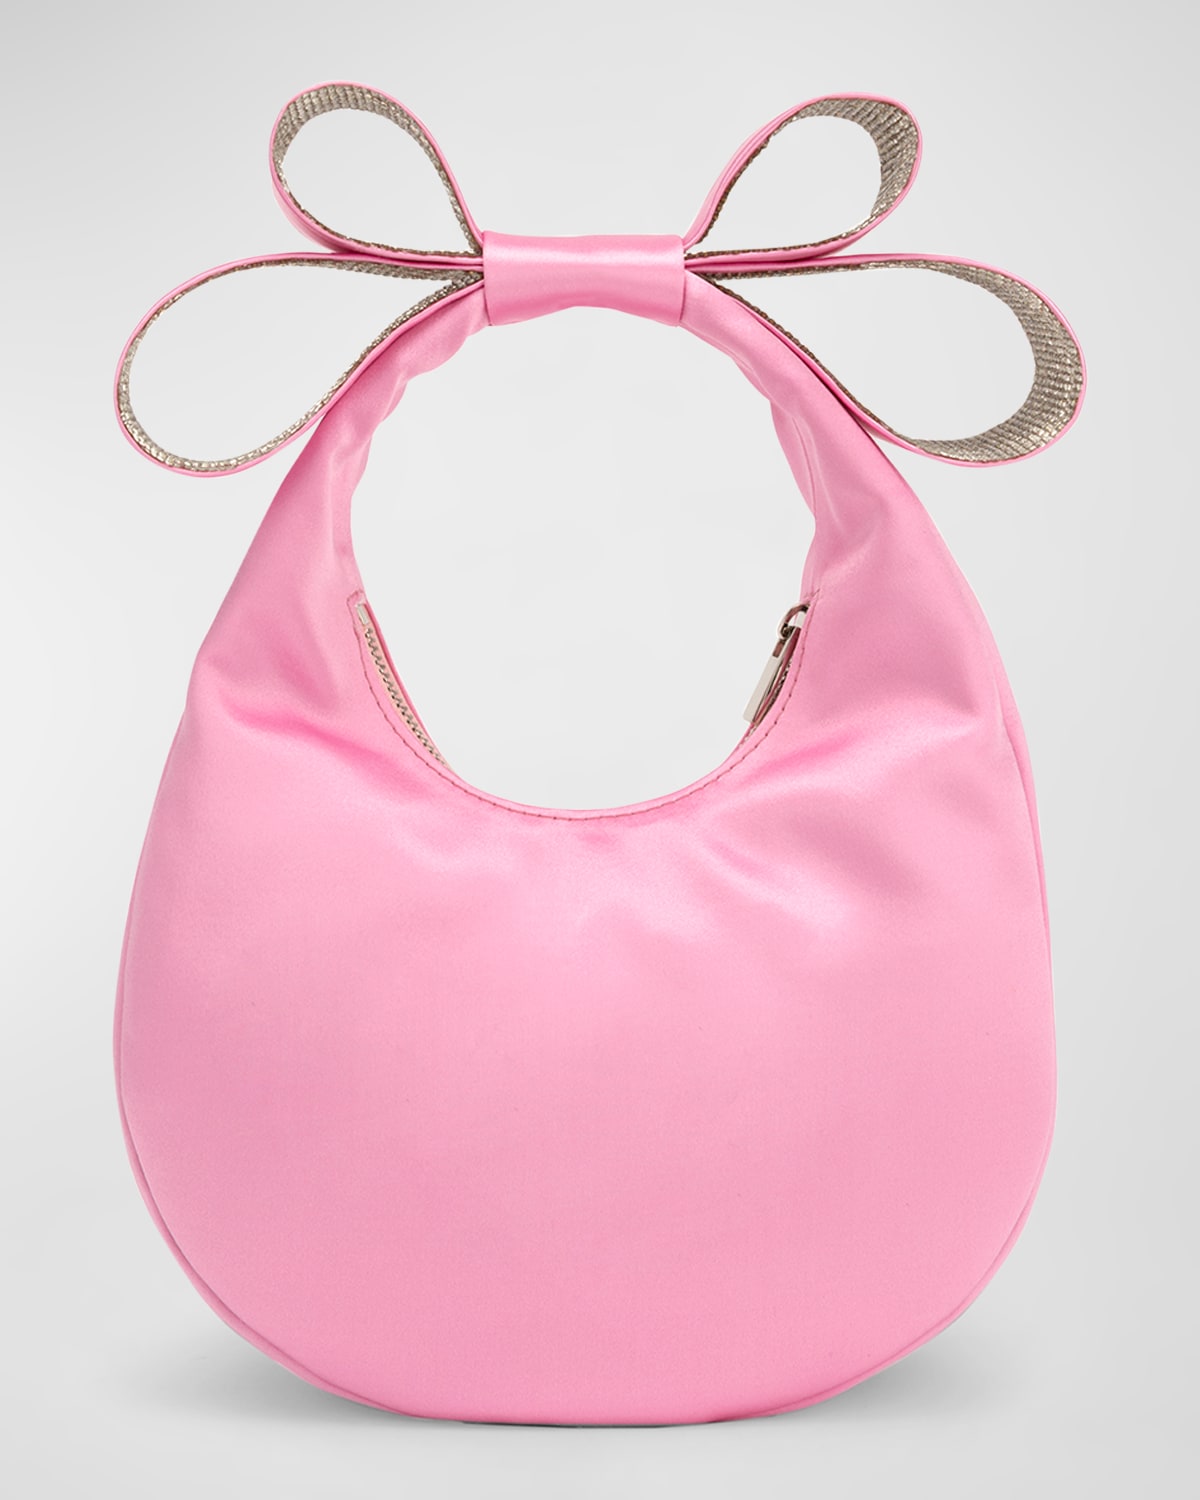 Small Bow Satin Top-Handle Bag